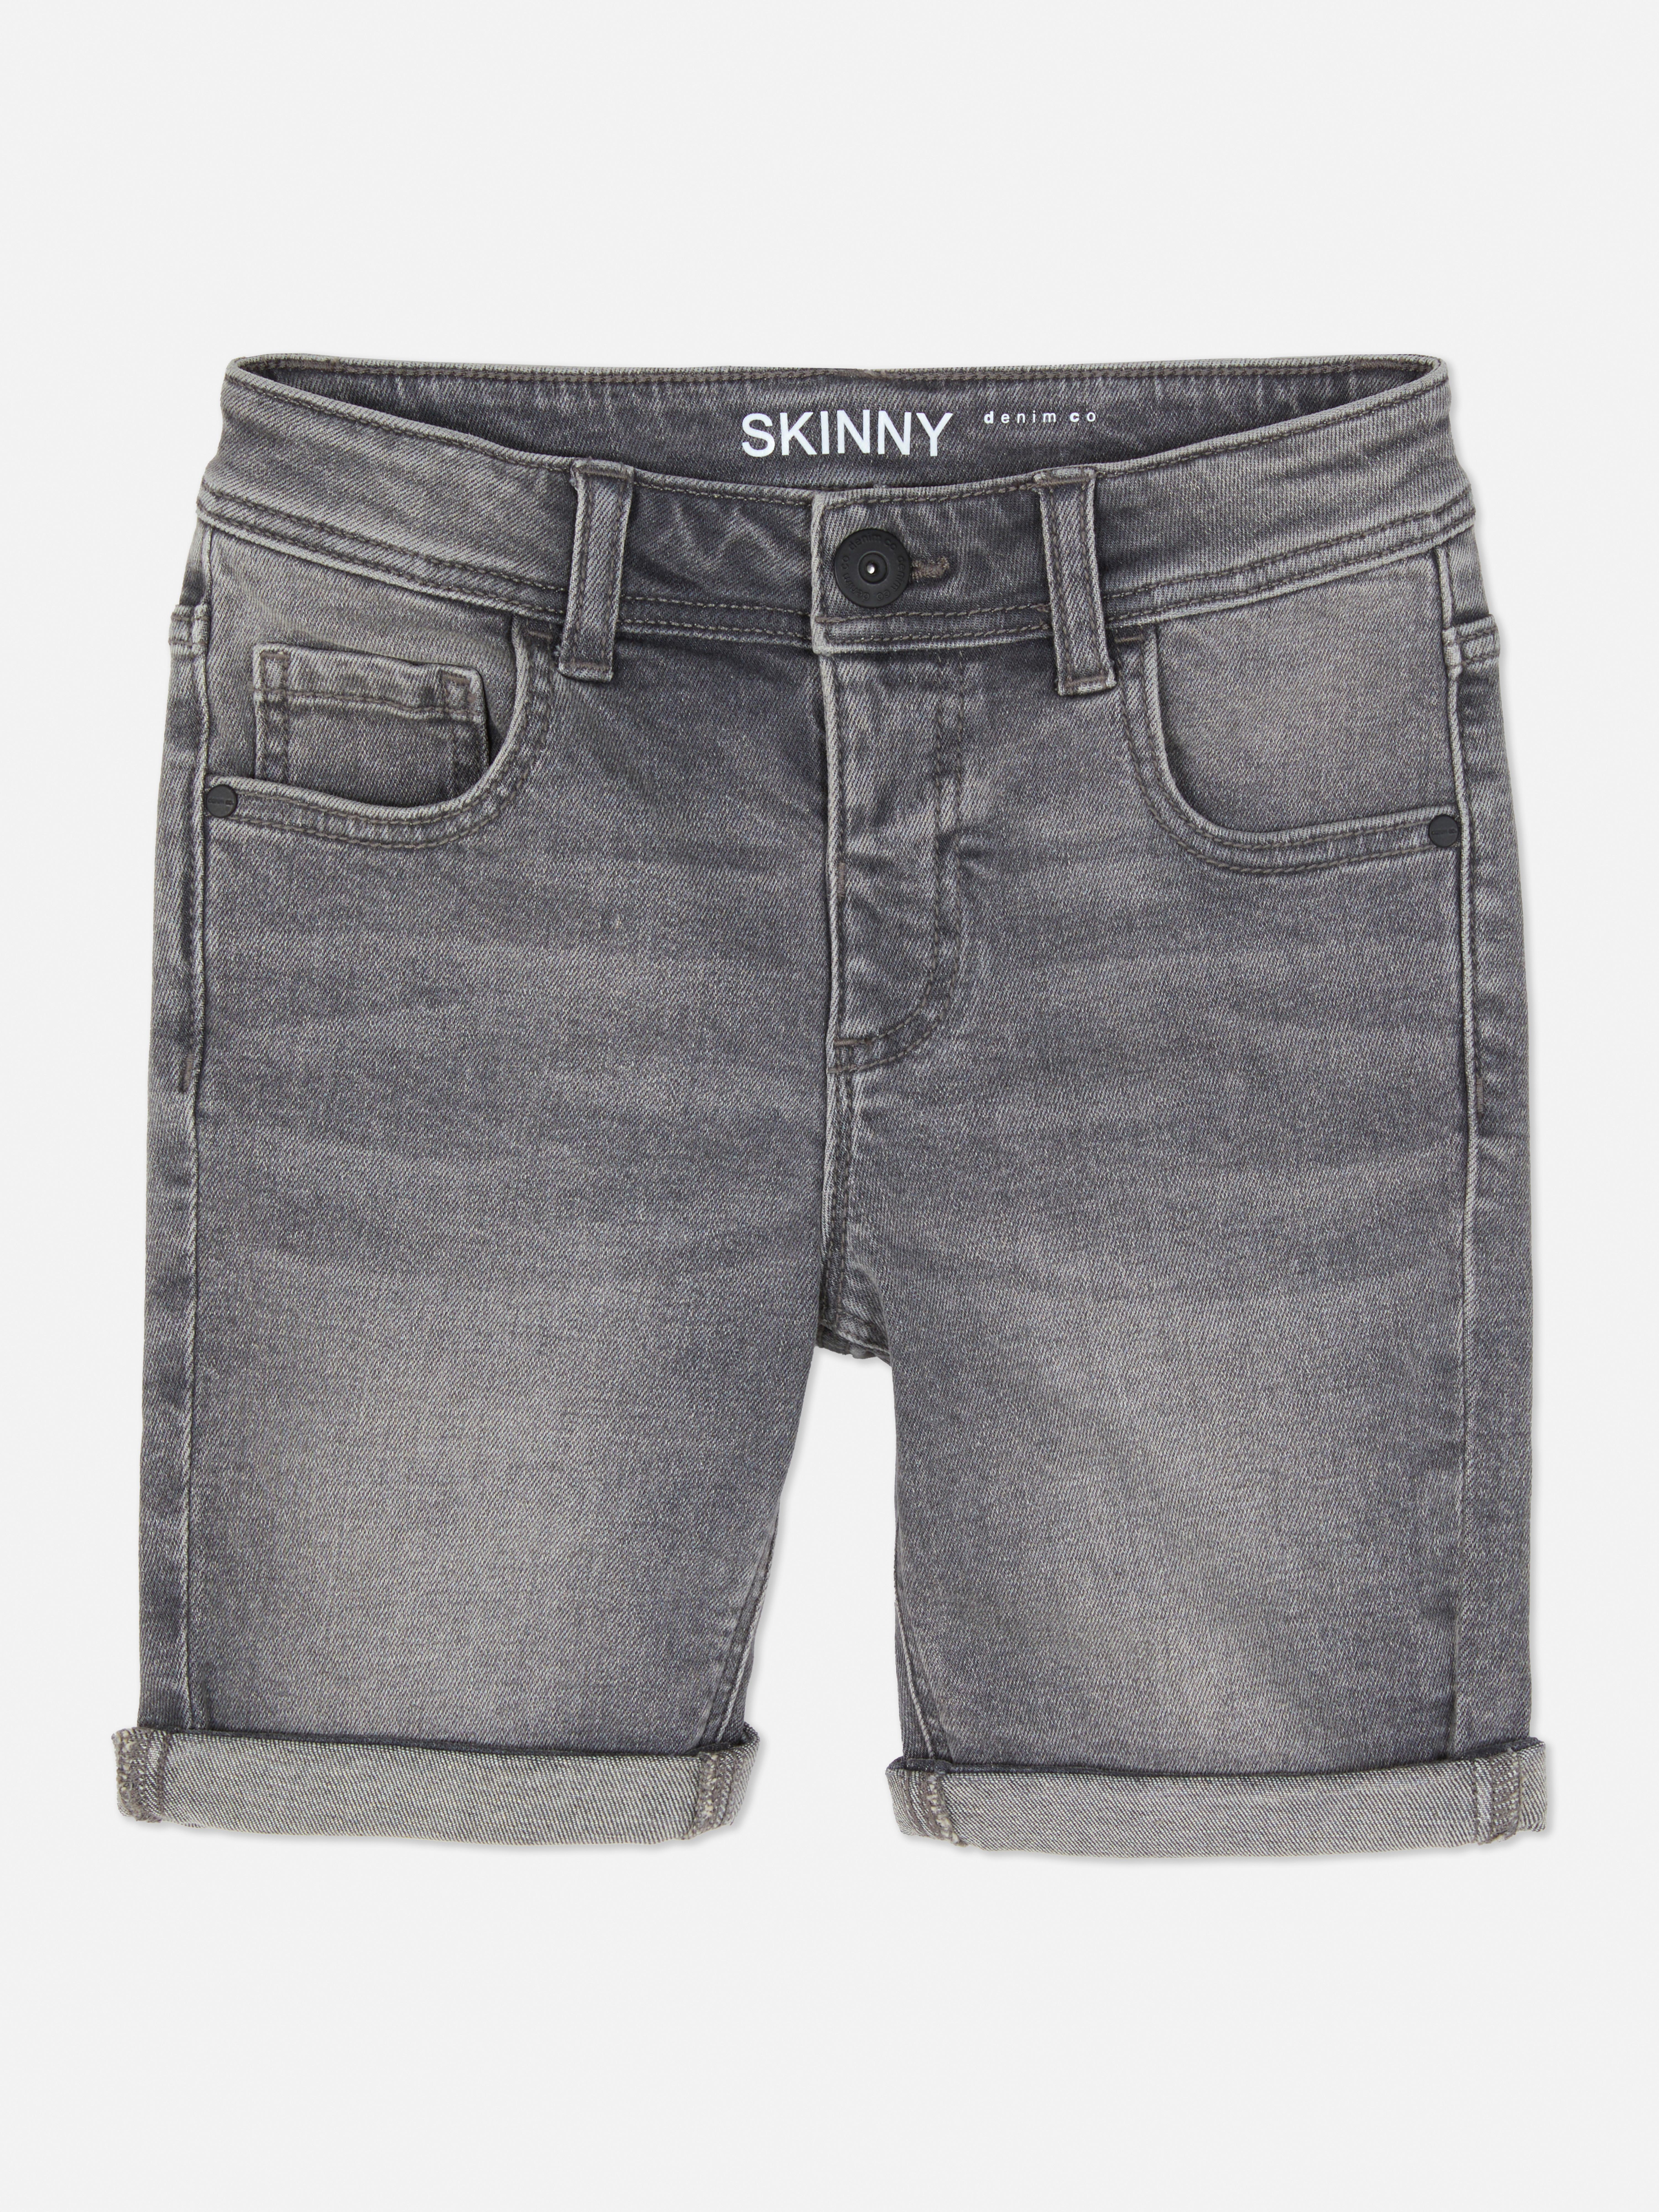 Skinny Denim Shorts